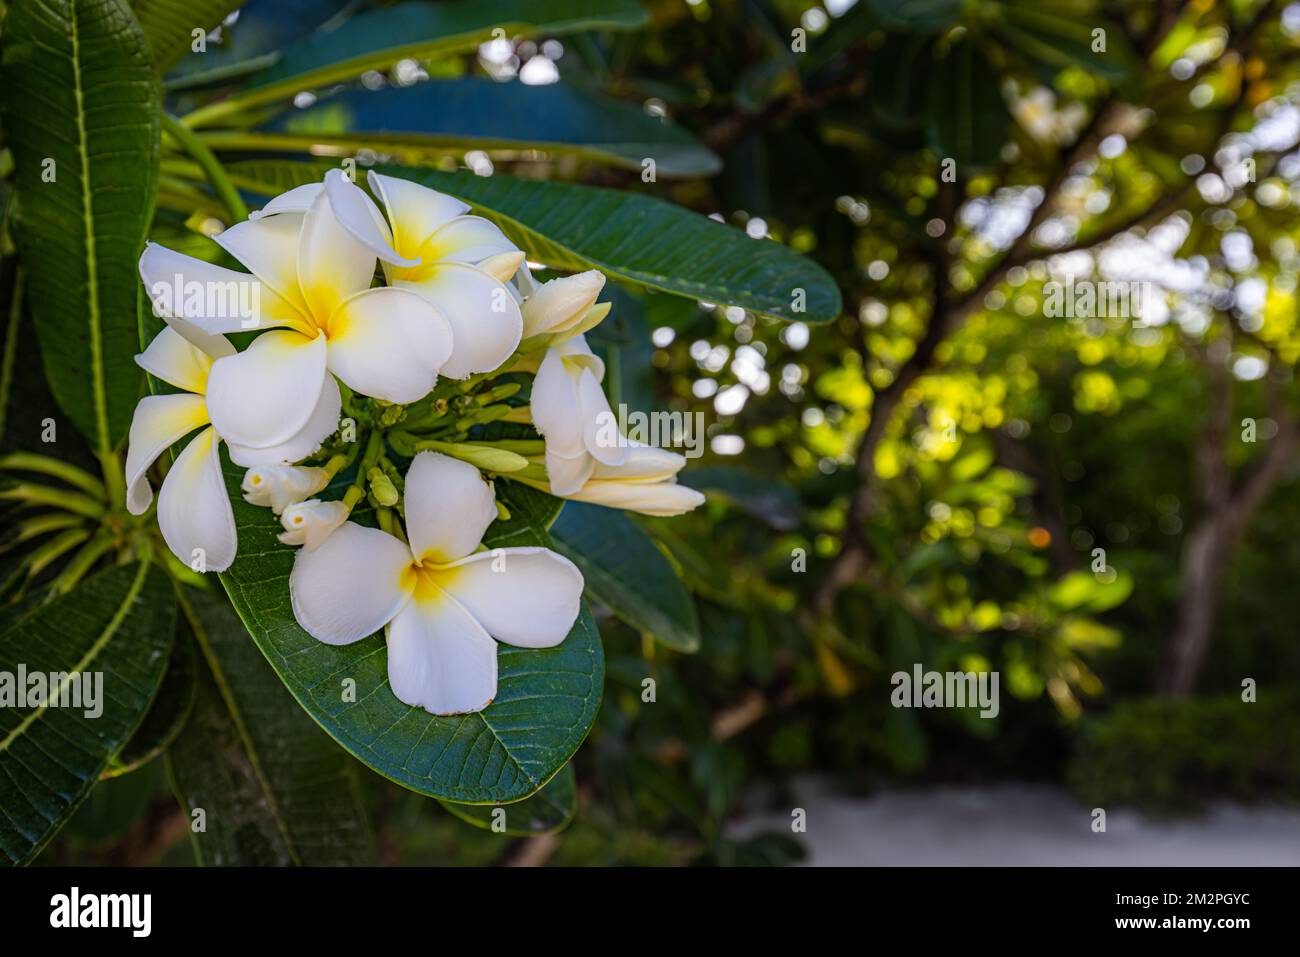 Fleurs de plumeria blanches et jaunes qui fleurissent sur l'arbre,  frangipani, fleurs tropicales. Lumière douce du soleil sur fleur exotique  en fleurs avec bokeh tropical flou Photo Stock - Alamy